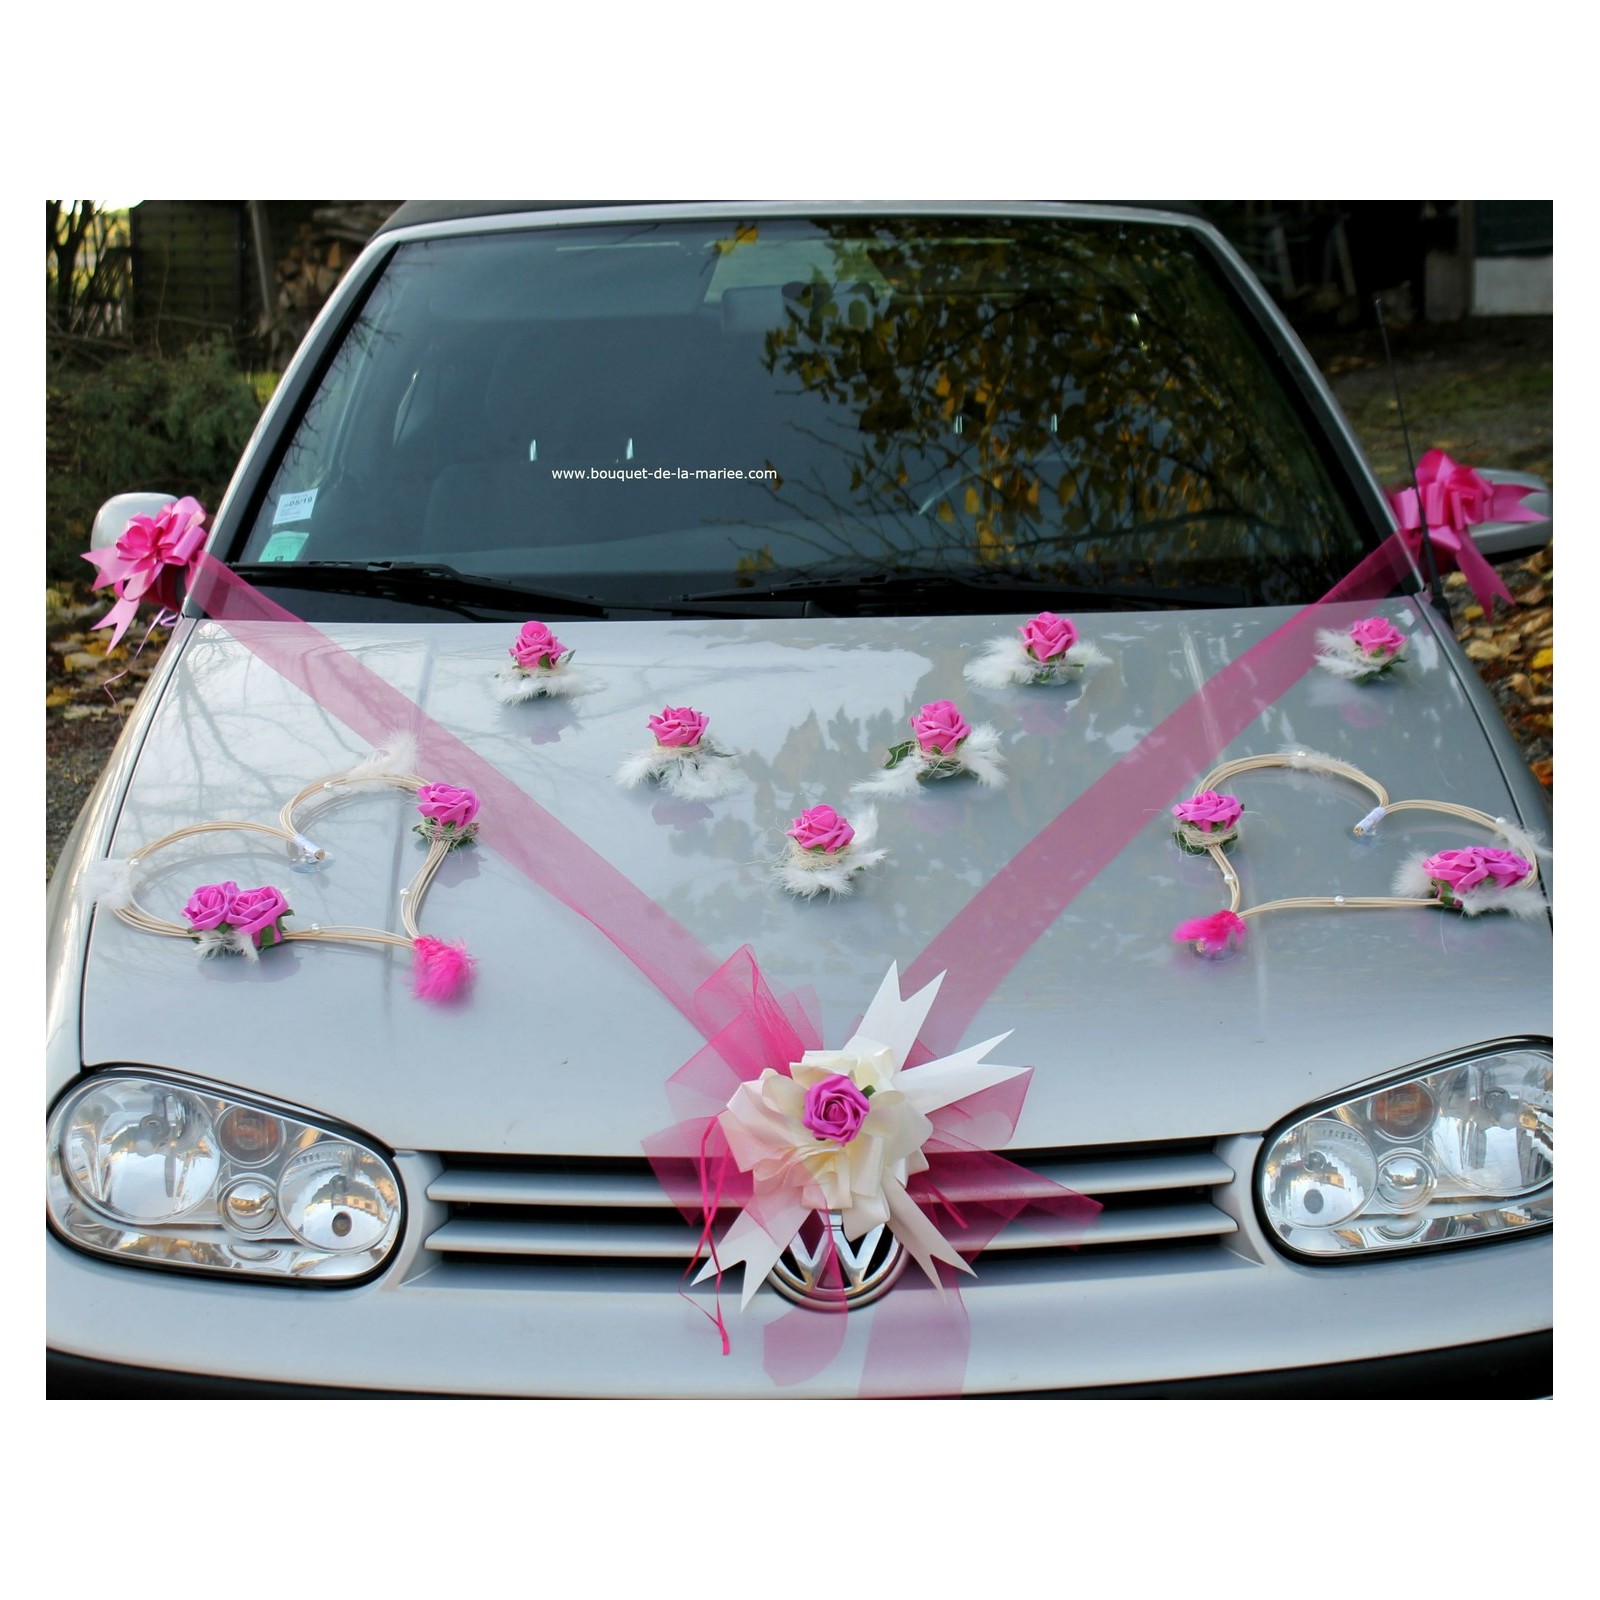 Décoration voiture mariage coeurs tulle ruban fuchsia Bouquet-de-la-mariee